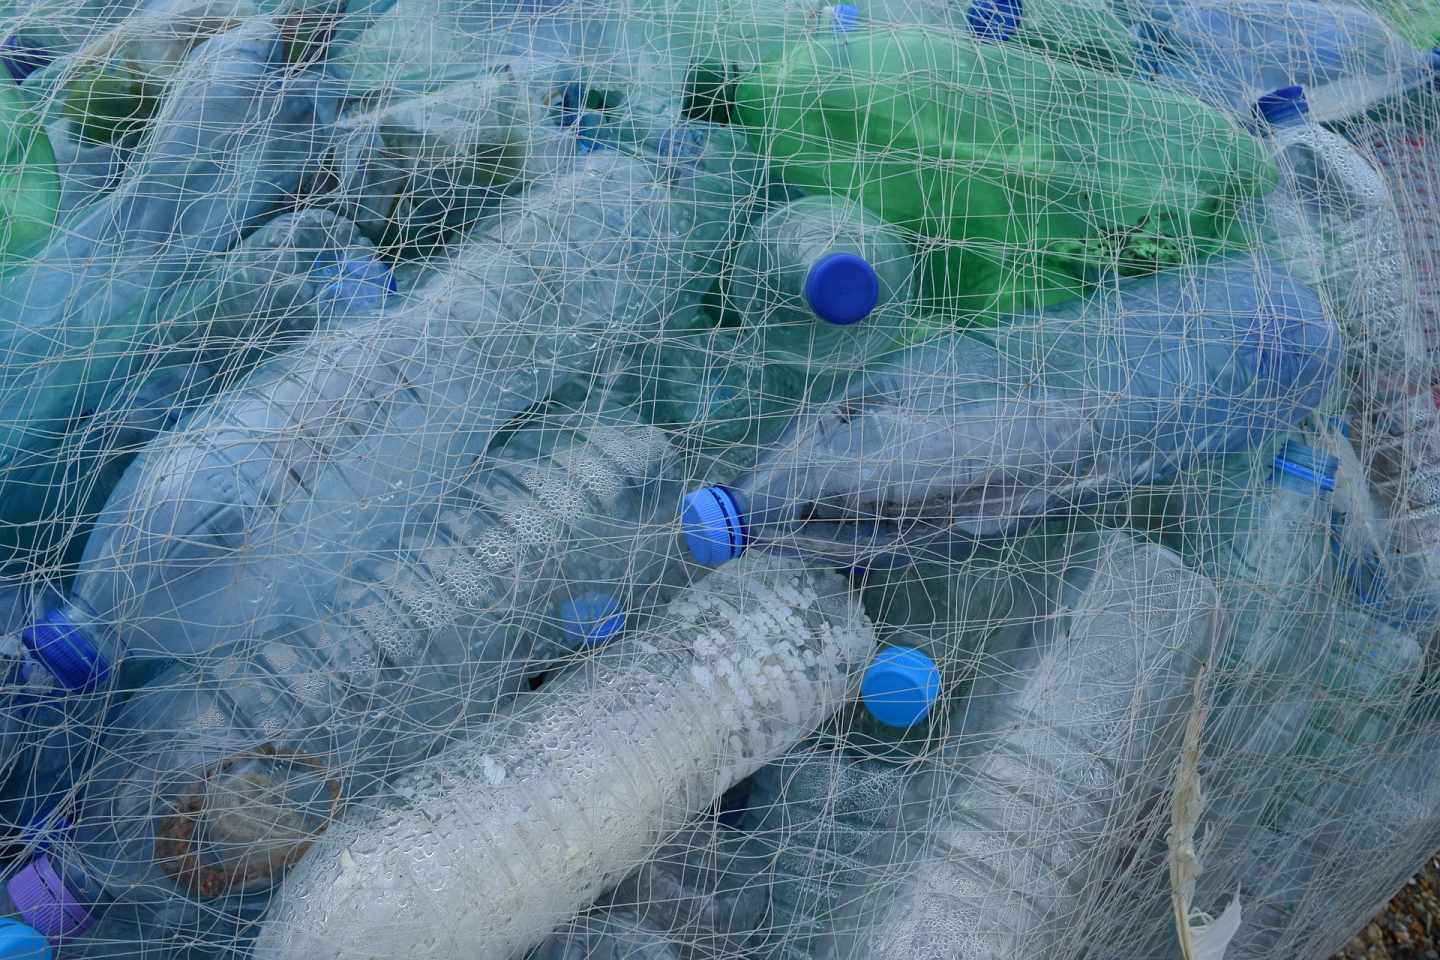 Las botellas de plástico PET acaban en el mar y se desintegran en forma de 'microplásticos'